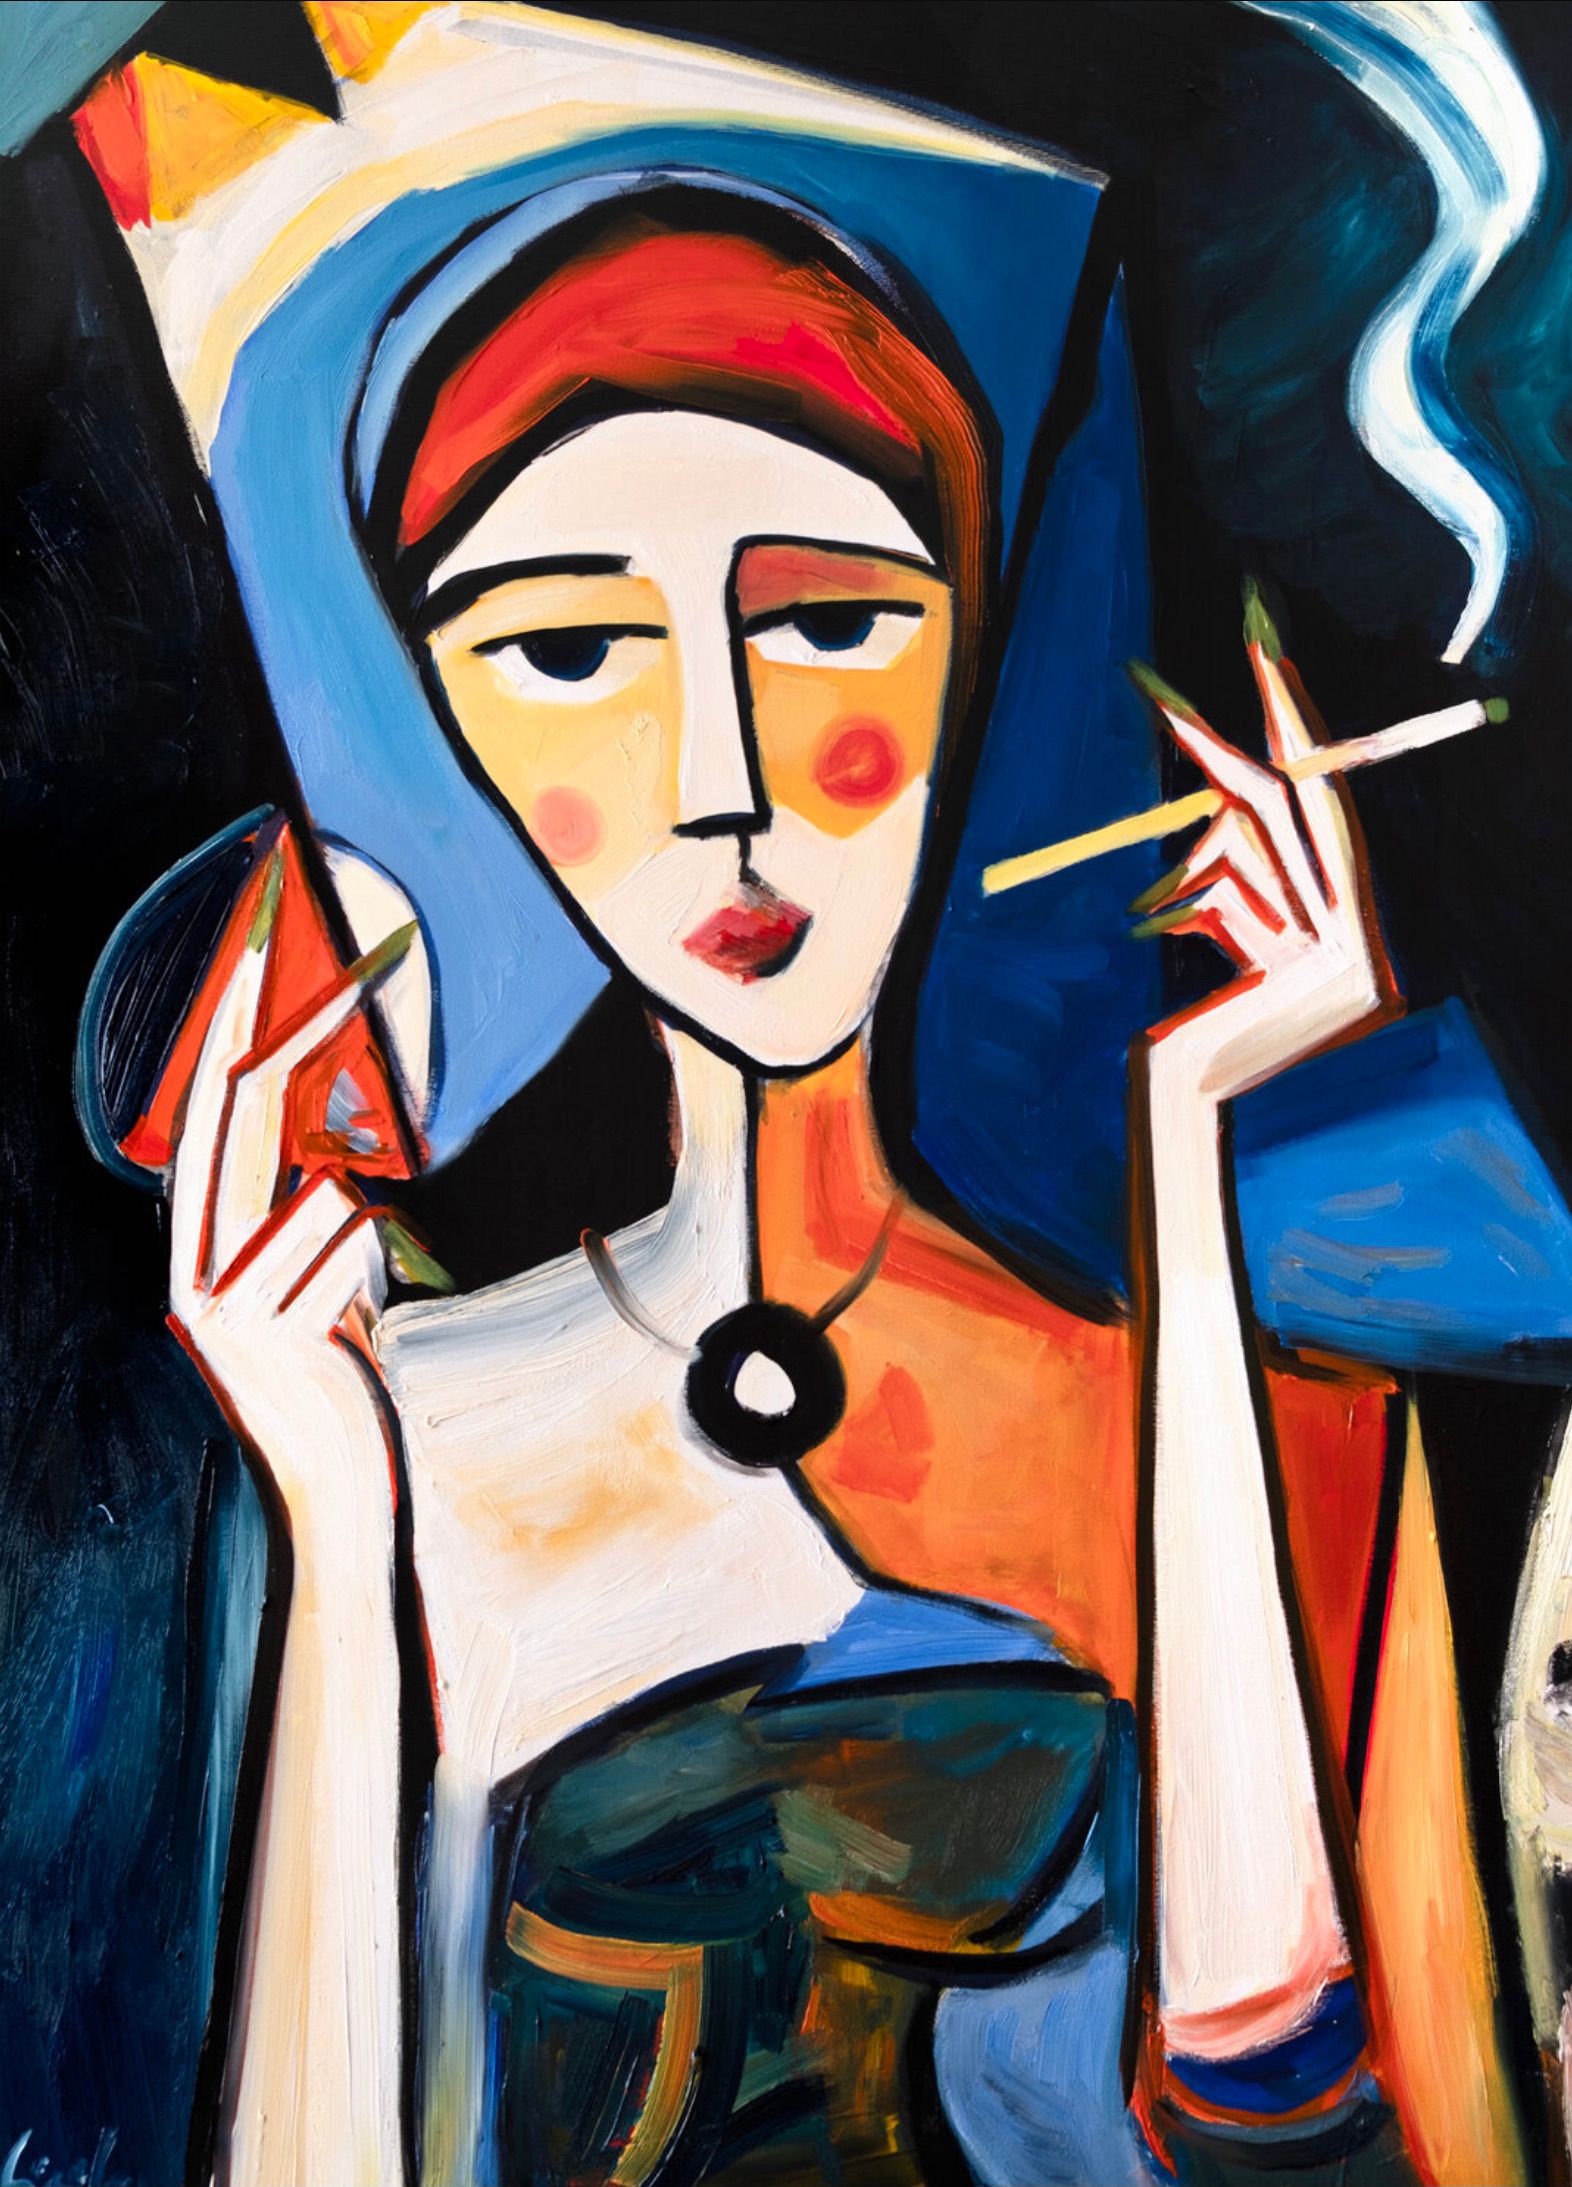 MECESLA Maciej Cieśla, "Chica en estilo semiabstracto 10", Mujer con cigarrillo, Cálida pero nostálgica, melancólica composición de gesto abstracto dominada por el blanco y el azul con acentos rojos.